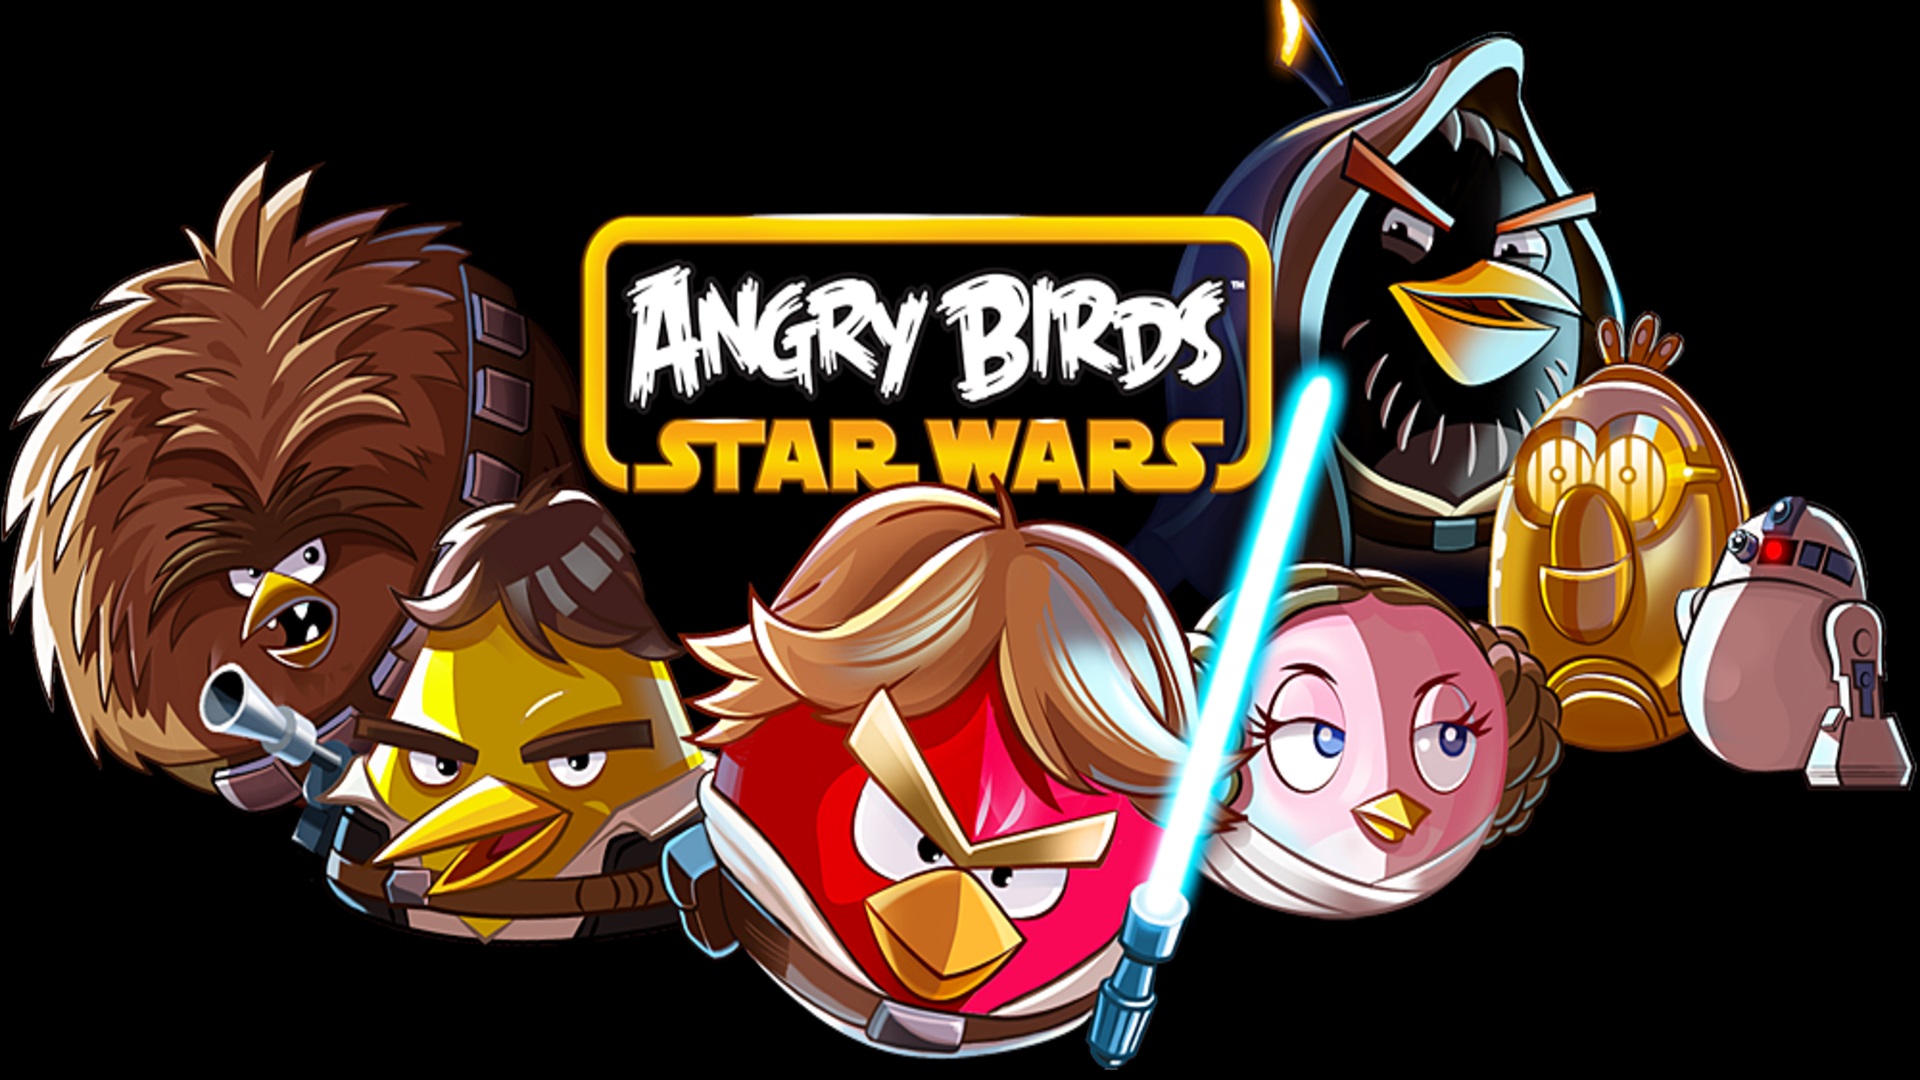 Энгри бердз star wars. Звездные войны Энгри Бердс Стар ВАРС 2. Энгри бердз Звездные войны 2. Игра Angry Birds Star Wars 1. Энгри бердз Звездные войны.